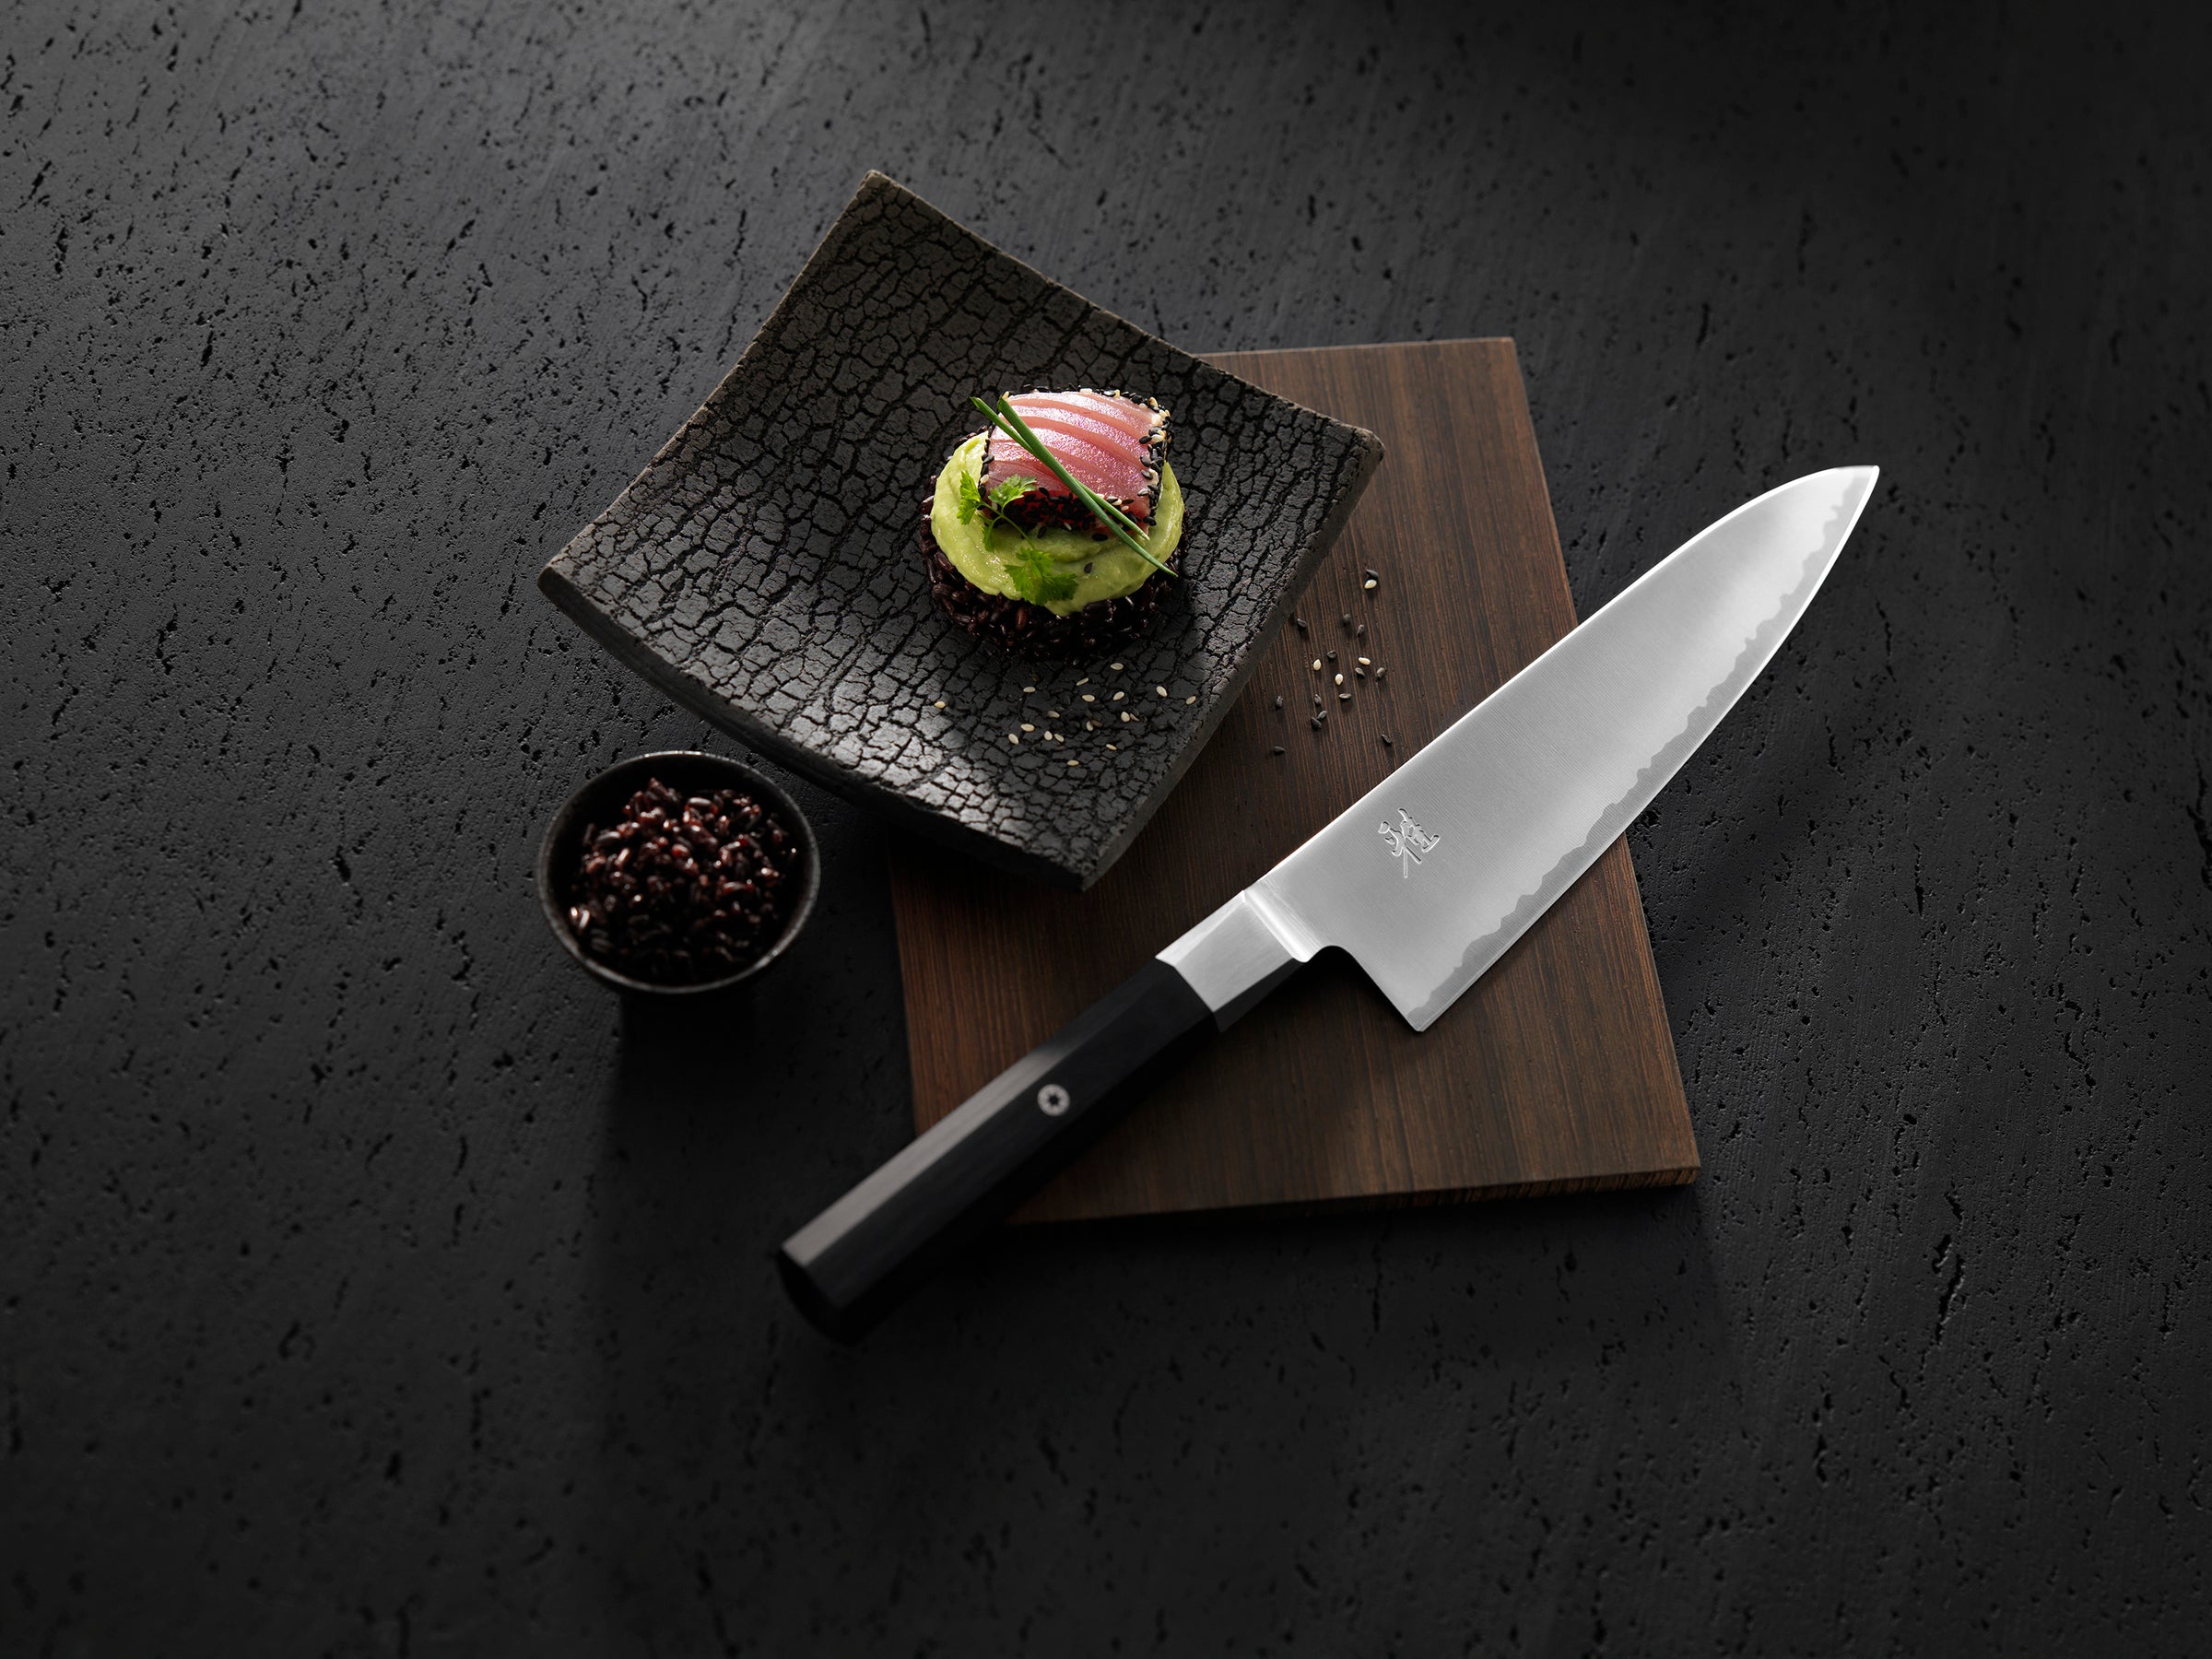 Miyabi Artisan Steak Knives, Set of 4